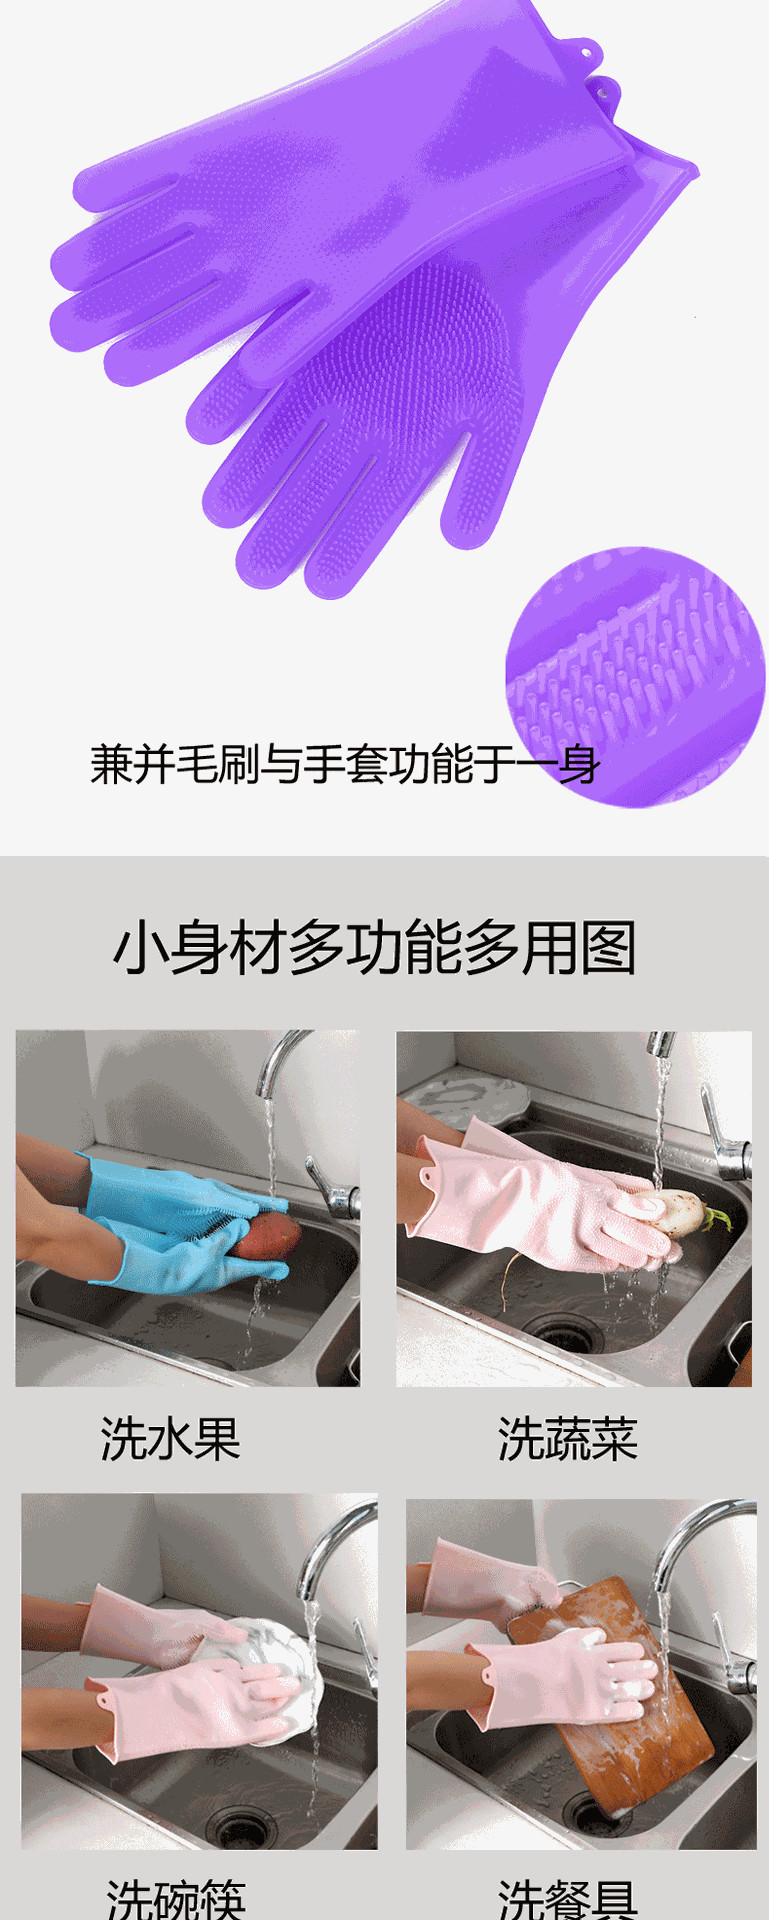 洗碗手套家用衣服洗衣加厚耐用型手套女刷厨房碗胶塑胶家务橡胶皮